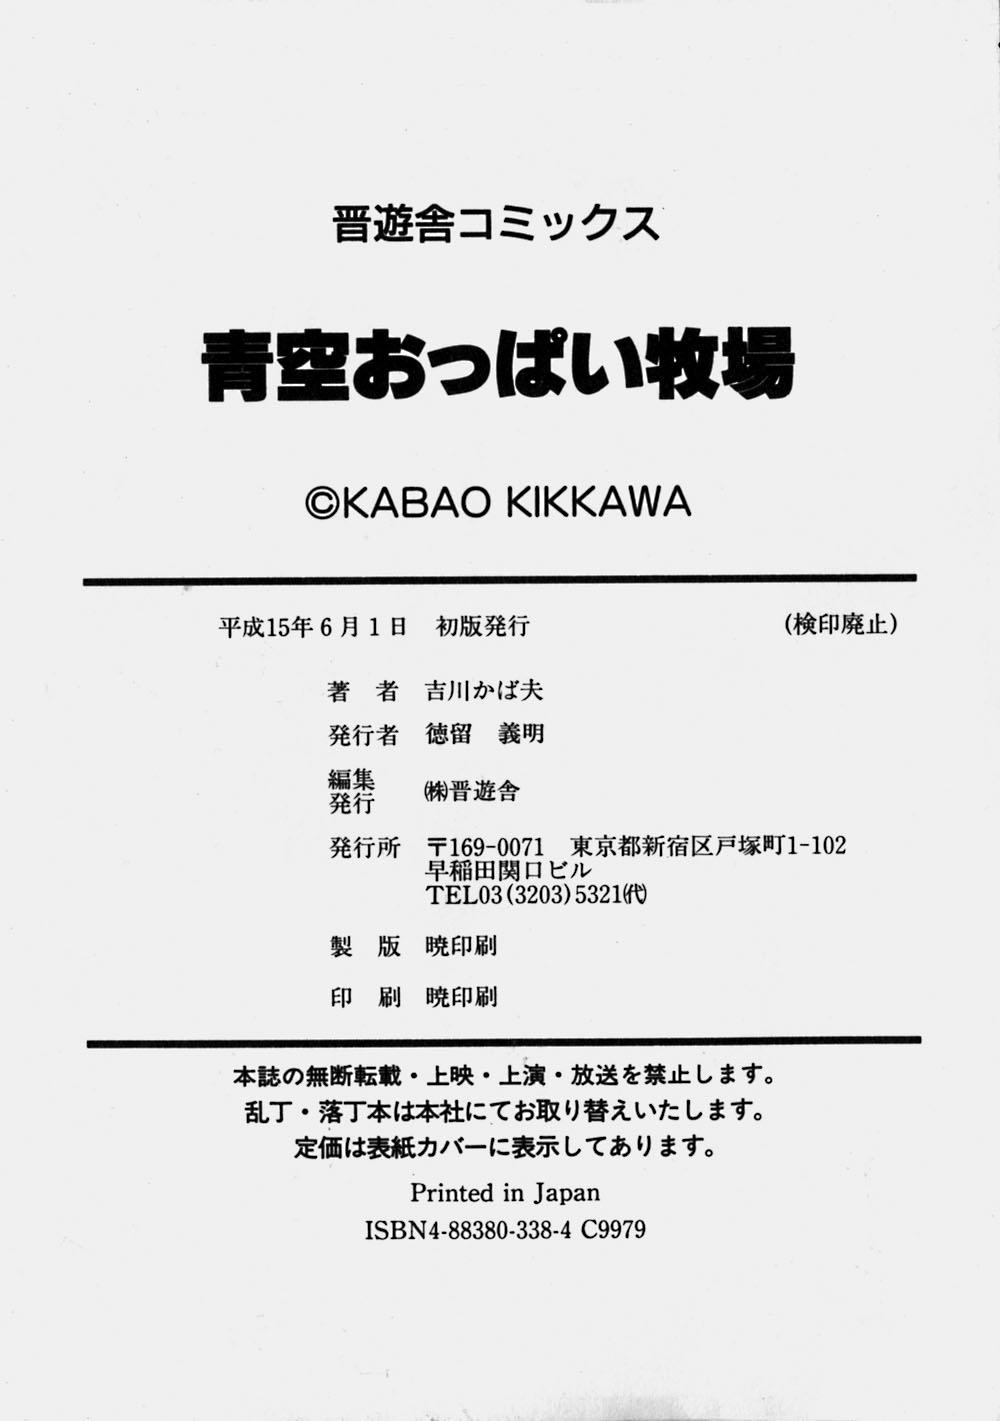 Negra Aozora Oppai Makiba - The blue sky oppai pasture Cartoon - Page 192